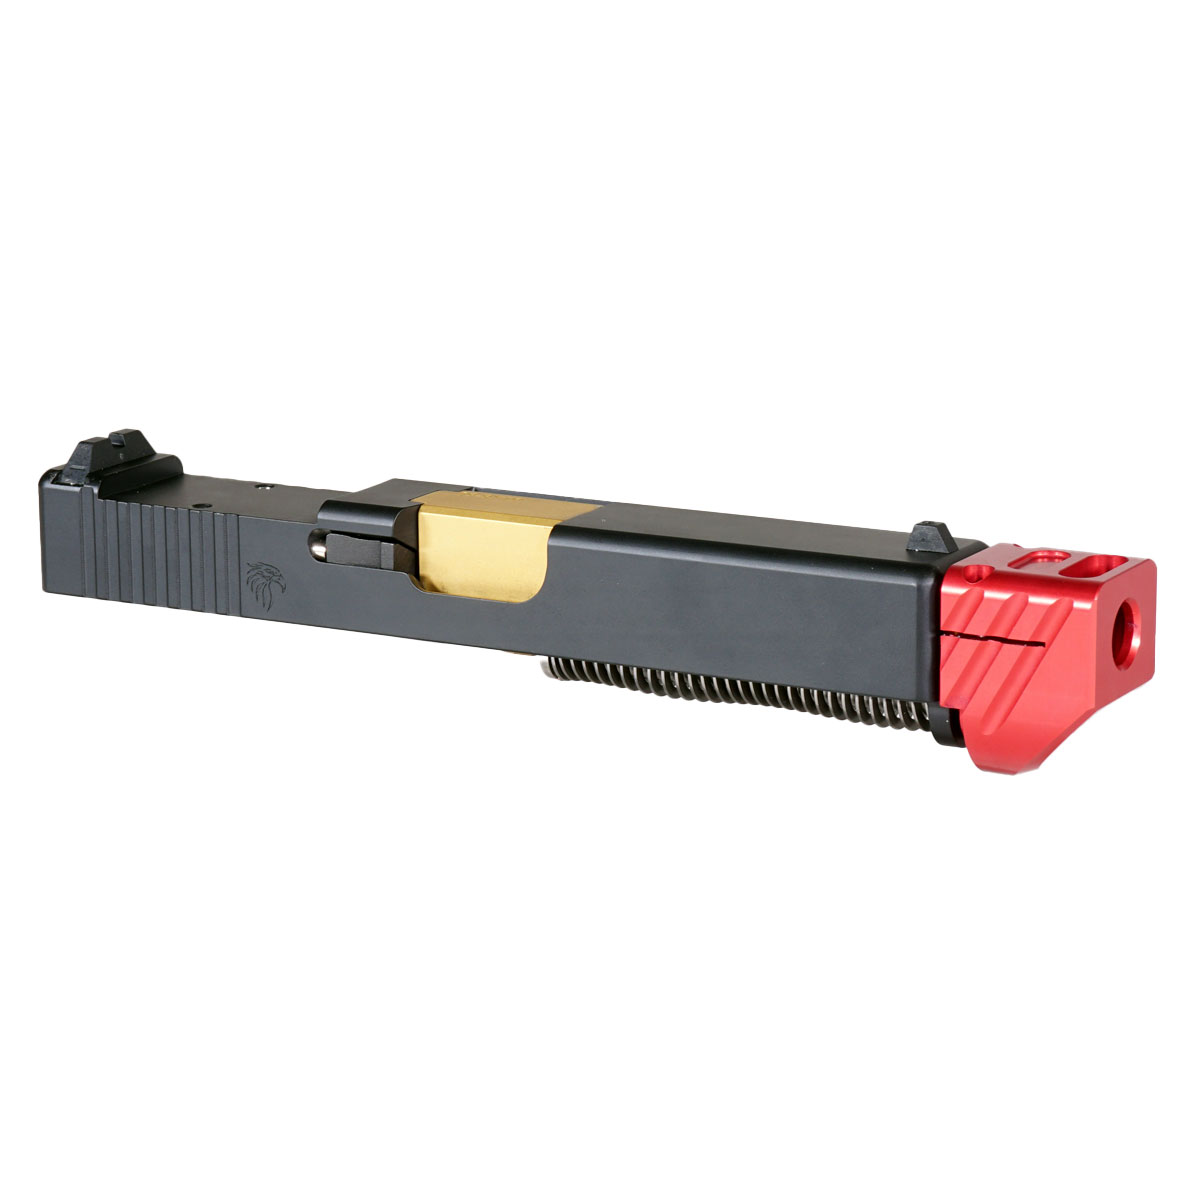 DTT 'Skyflash V3 w/ Red Compensator' 9mm Complete Slide Kit - Glock 19 Gen 1-3 Compatible